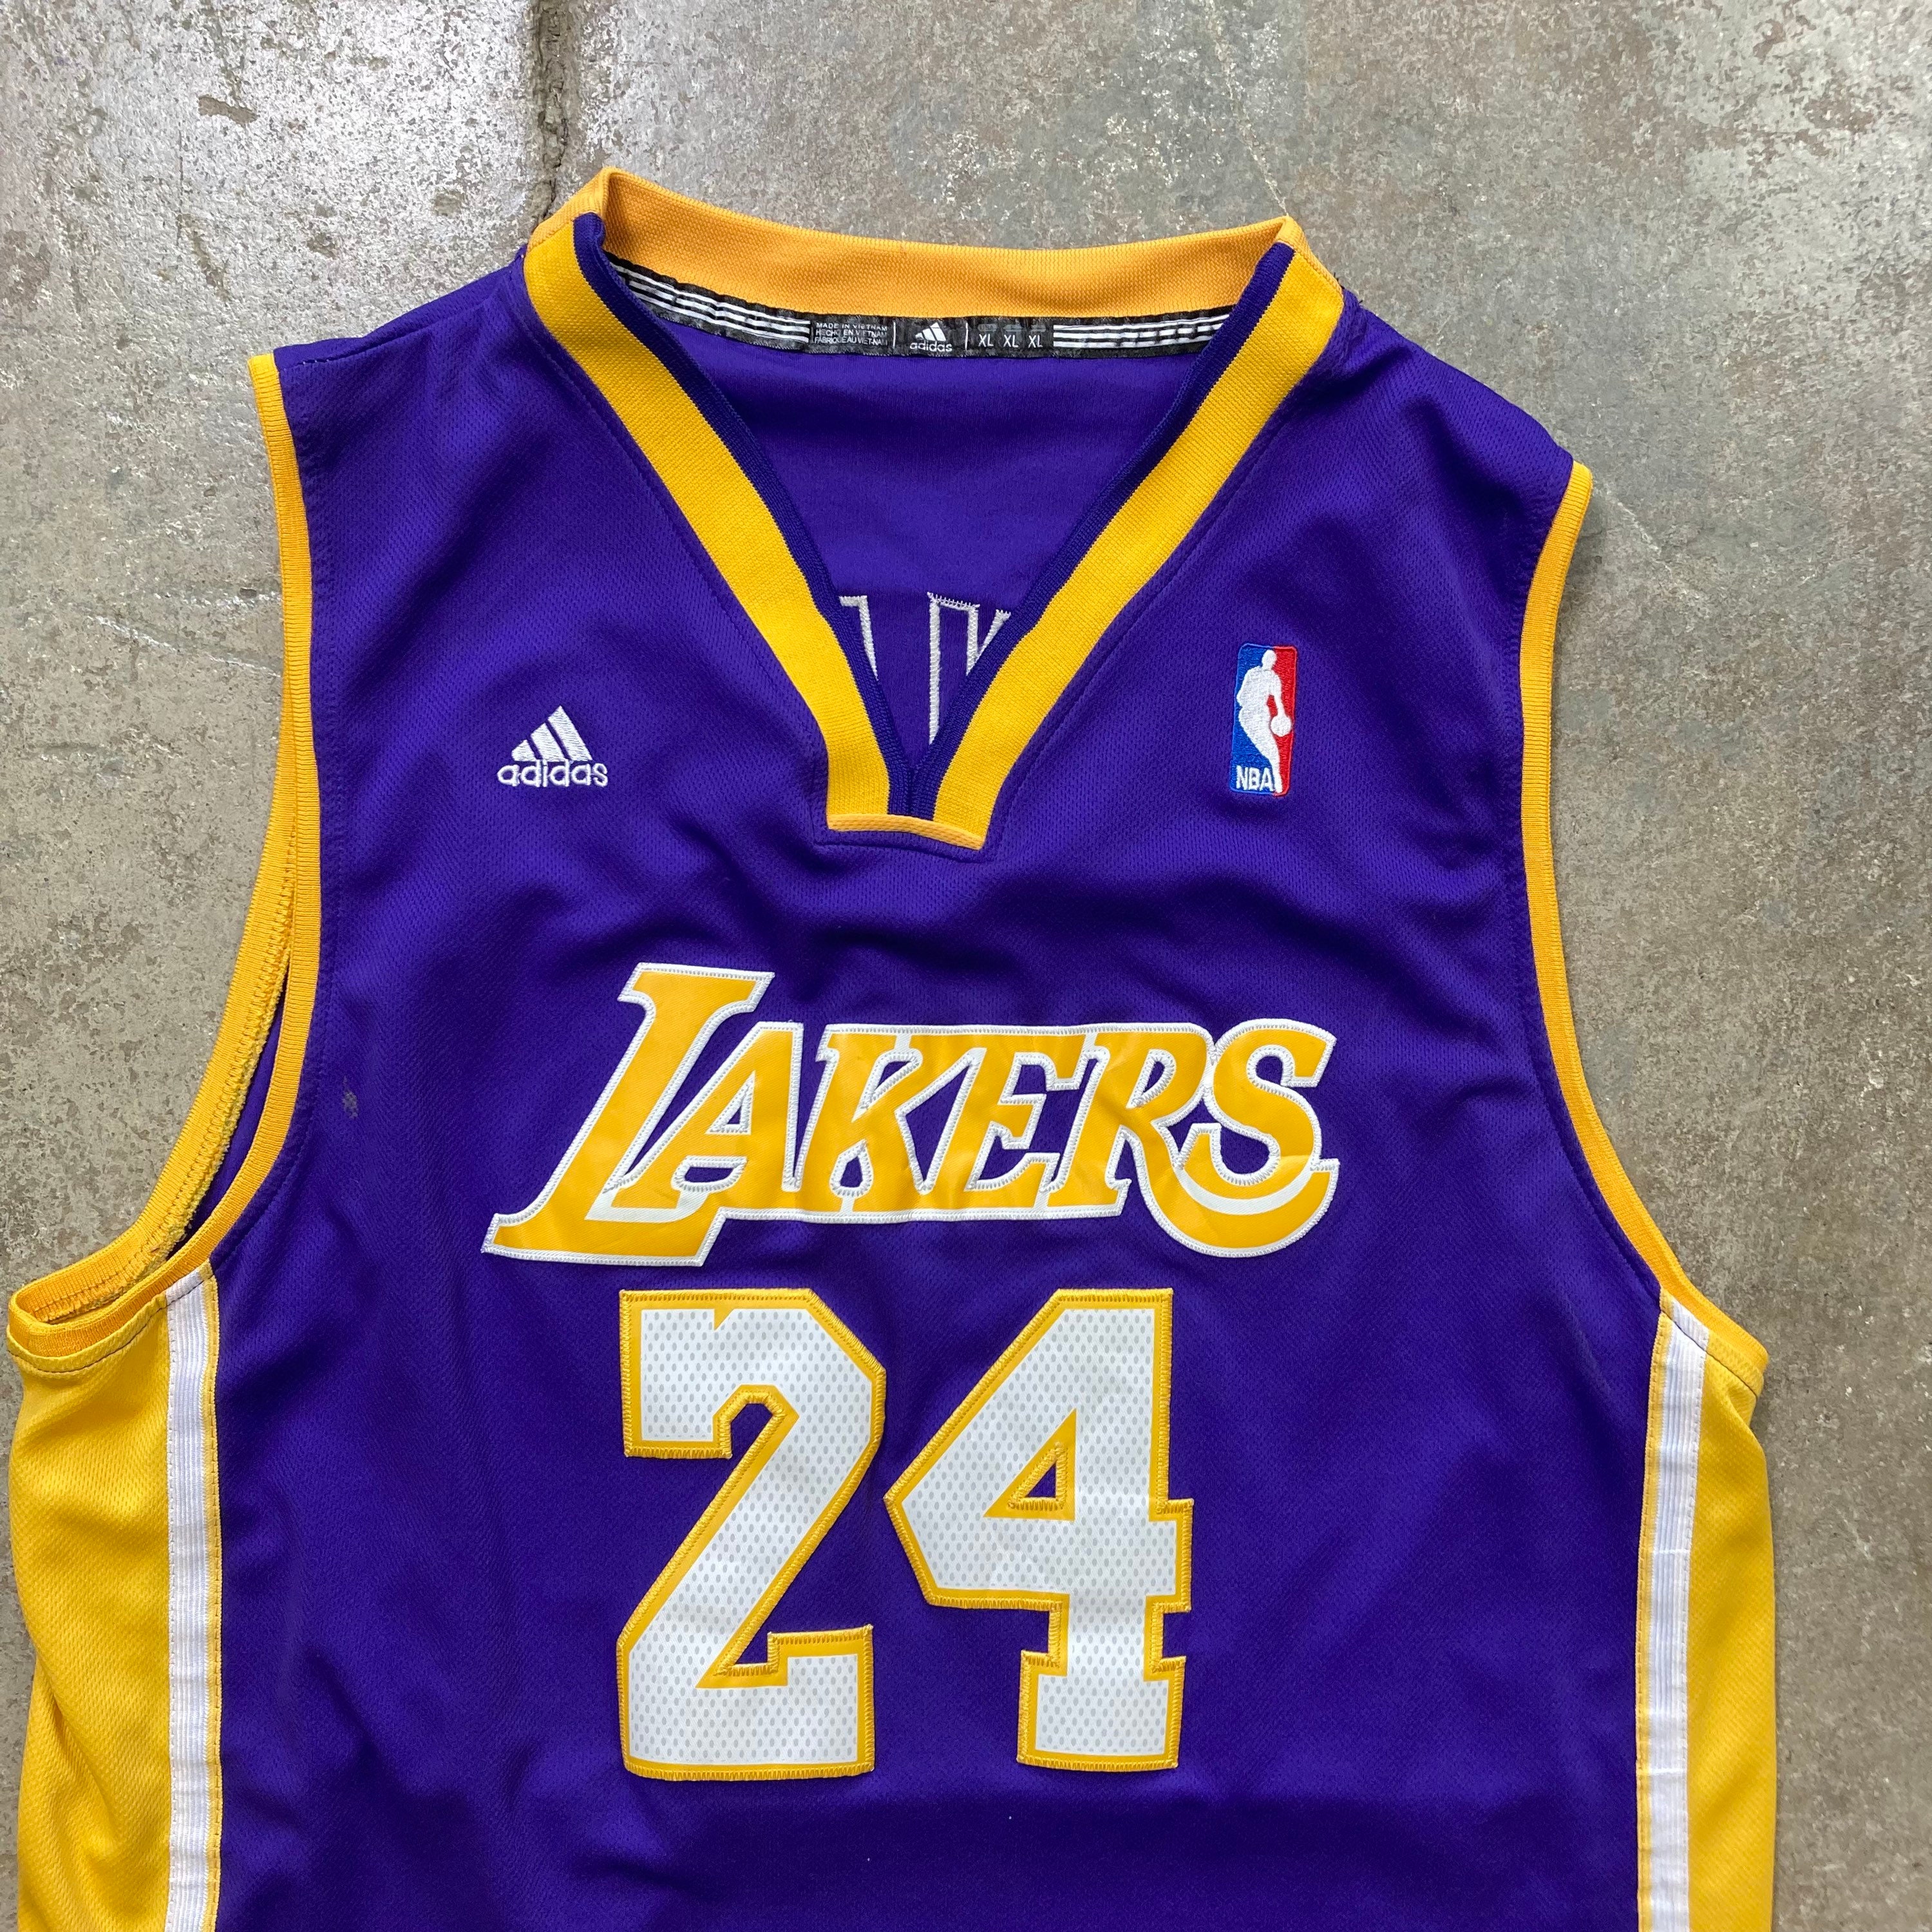 Kobe Bryant Lakers Stitch Jersey Men XXL NBA Adidas White and Purple